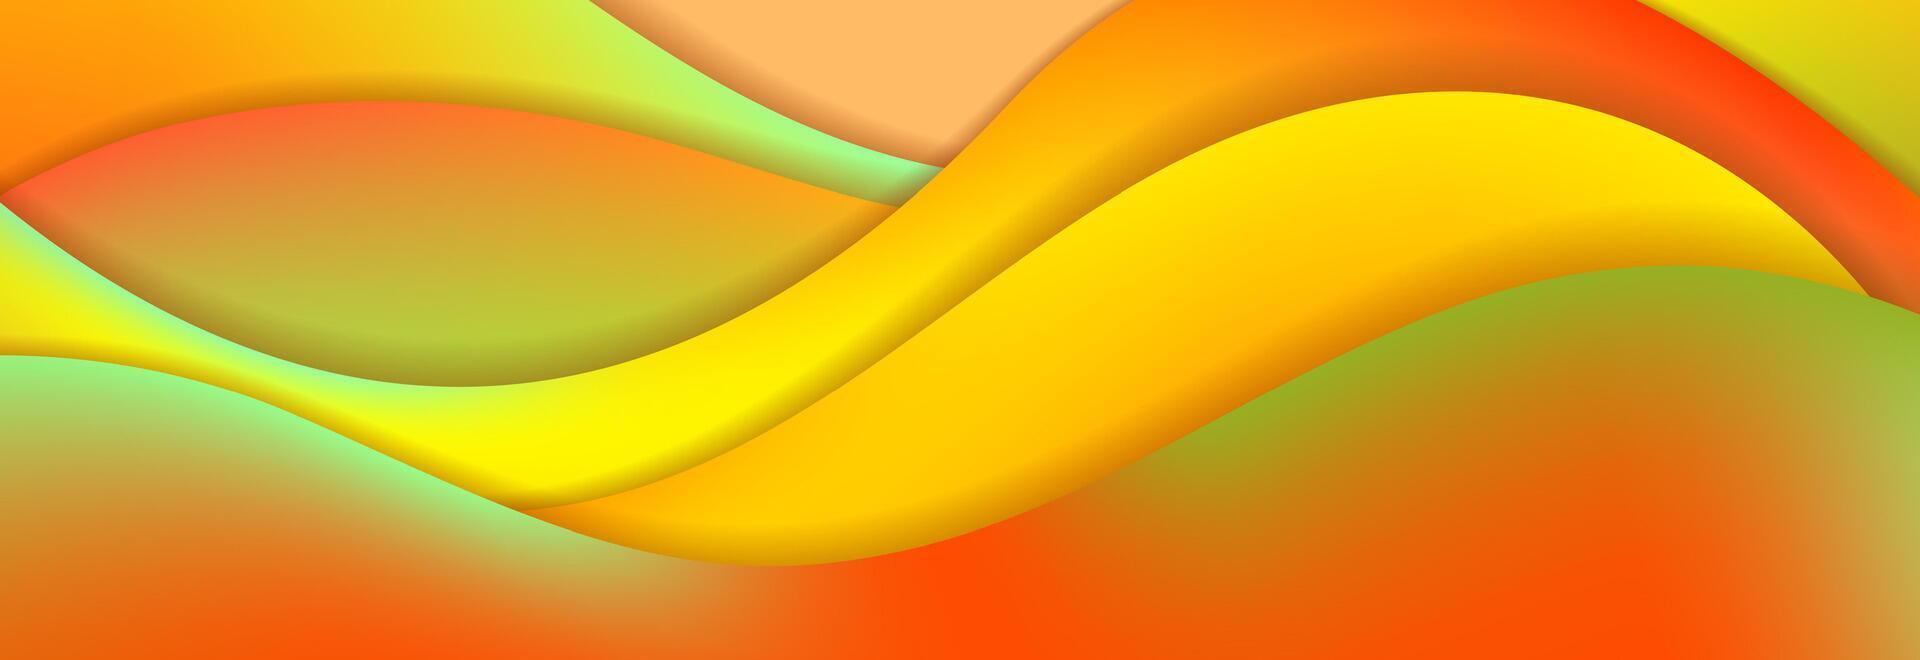 groen en oranje herfst kleuren abstract golvend achtergrond vector